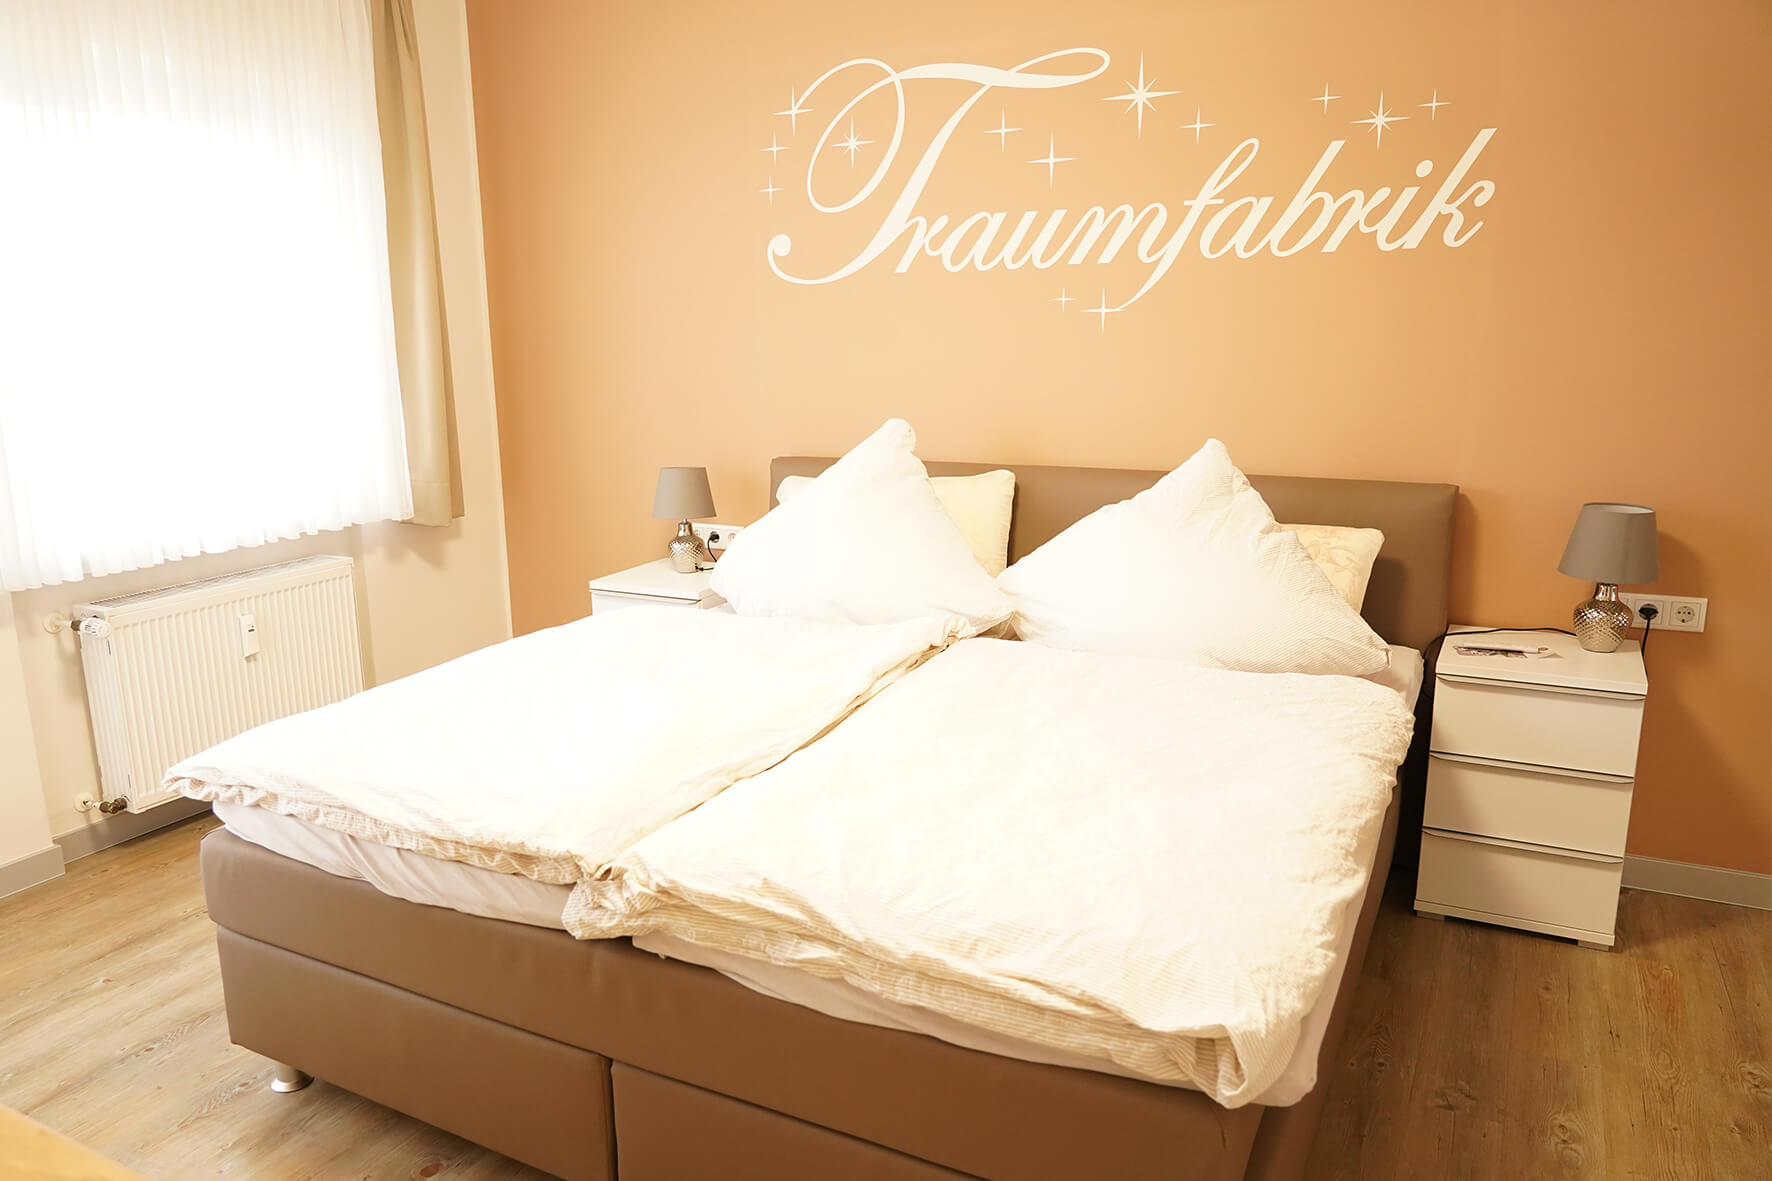 Zimmer mit einer Pfirsichfarbenden Wand und einem Wandtattoo "Traumfabrik" mit einem braunen Lederbett davor